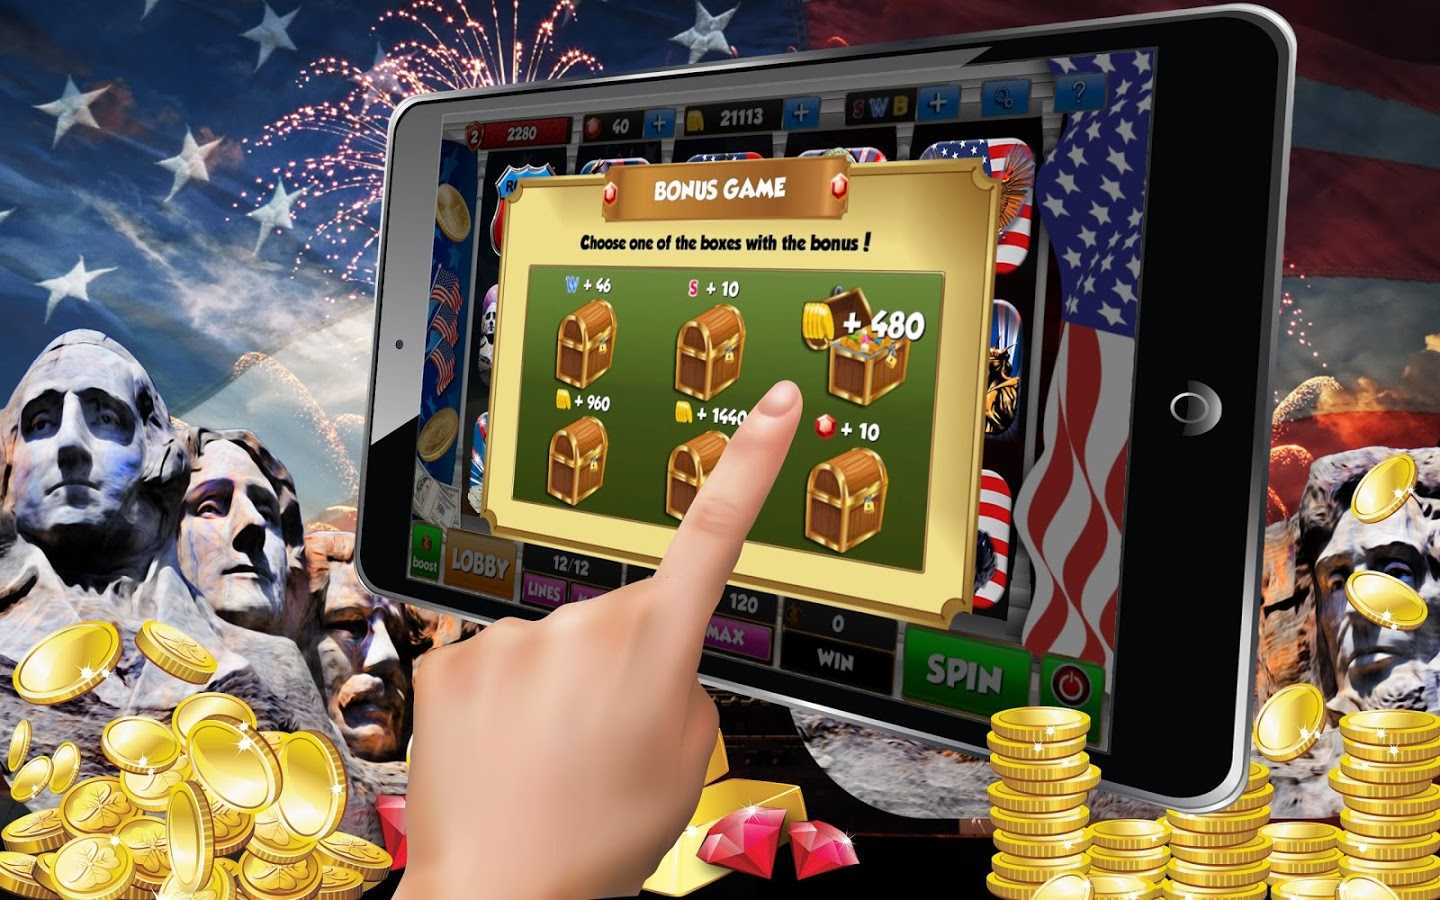 онлайн казино какое выбрать